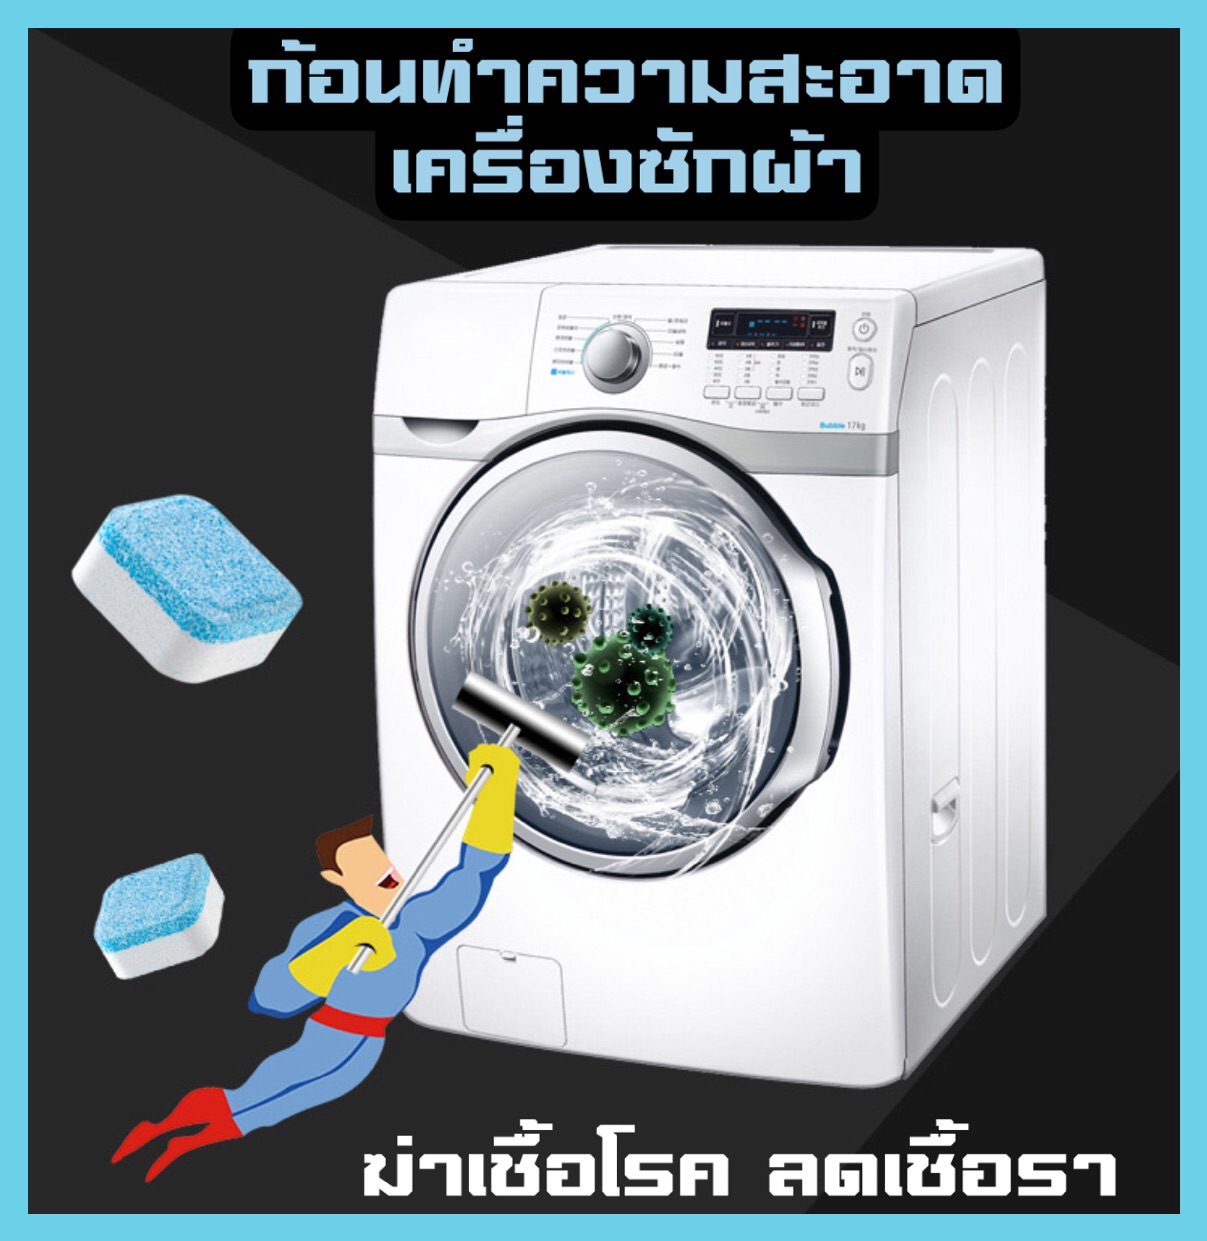 ล้างถังซัก ล้างเครื่องซักผ้า (3 ก้อน) ก้อนฟู่ ล้างถังซักผ้า ขจัดคราบสกปรก ฆ่าเชื้อโรค เครื่องซักผ้ามีเก็บปลายทาง